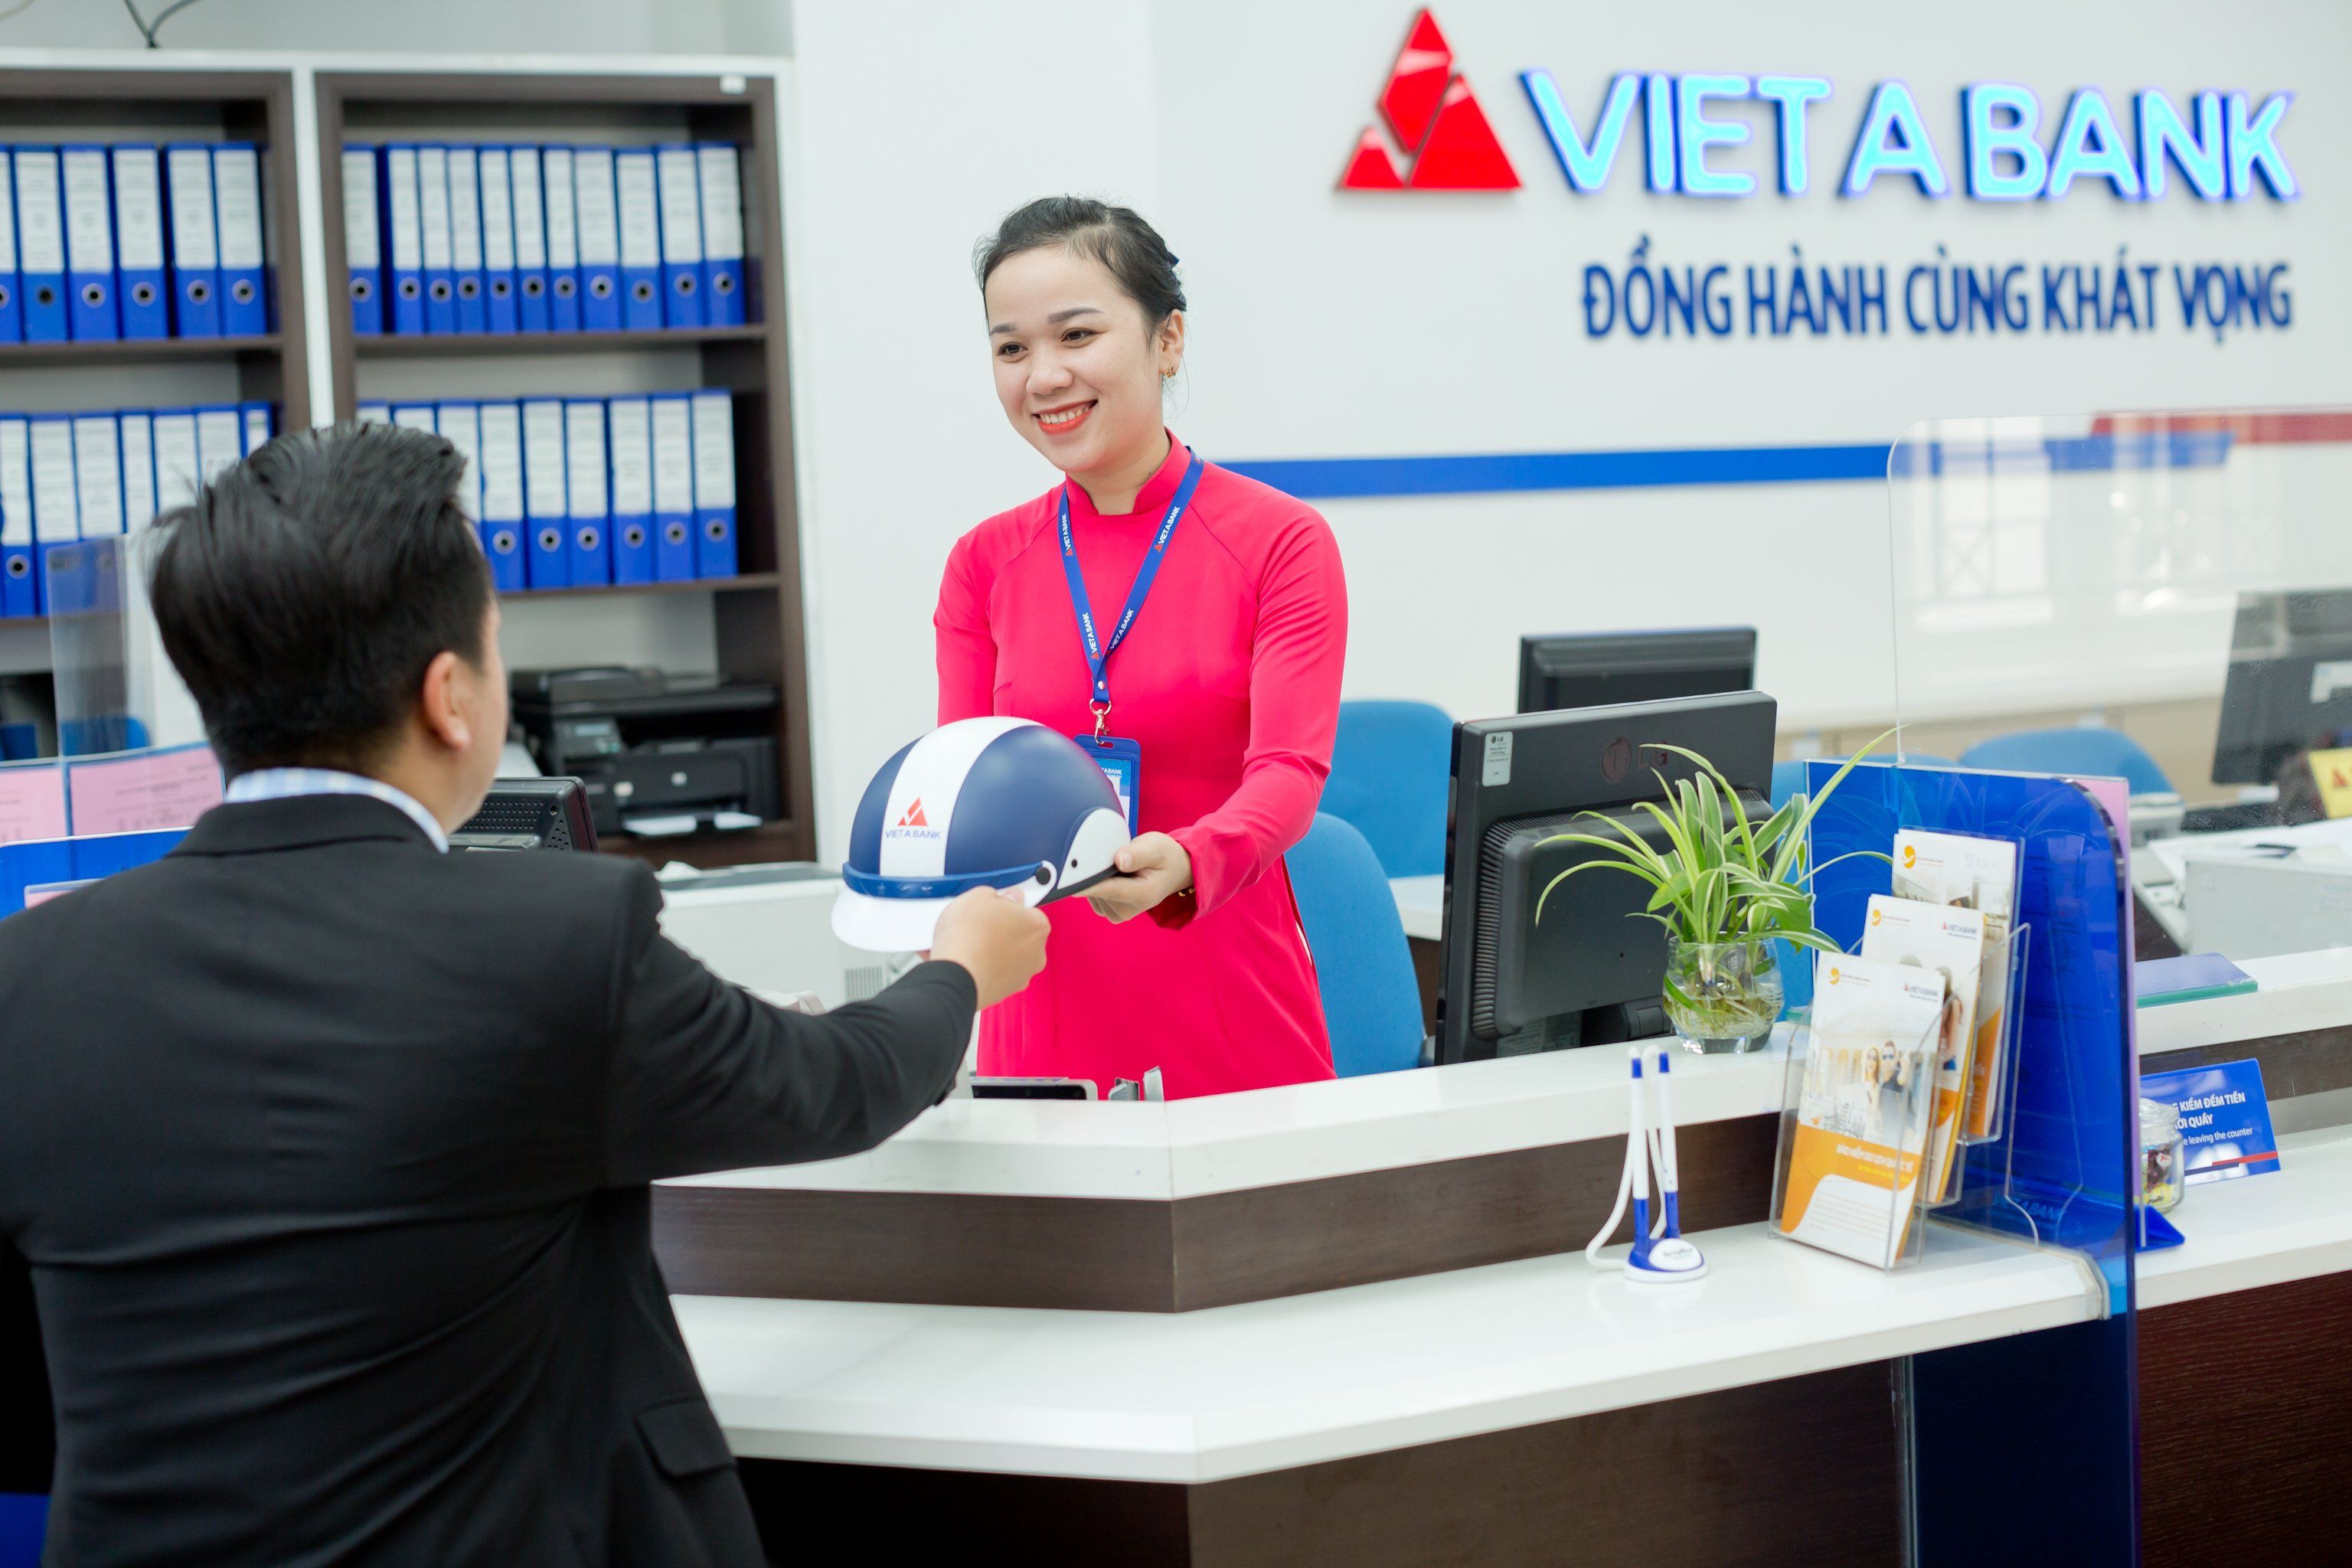 Lãi suất ngân hàng Việt Á hôm nay là bao nhiêu?